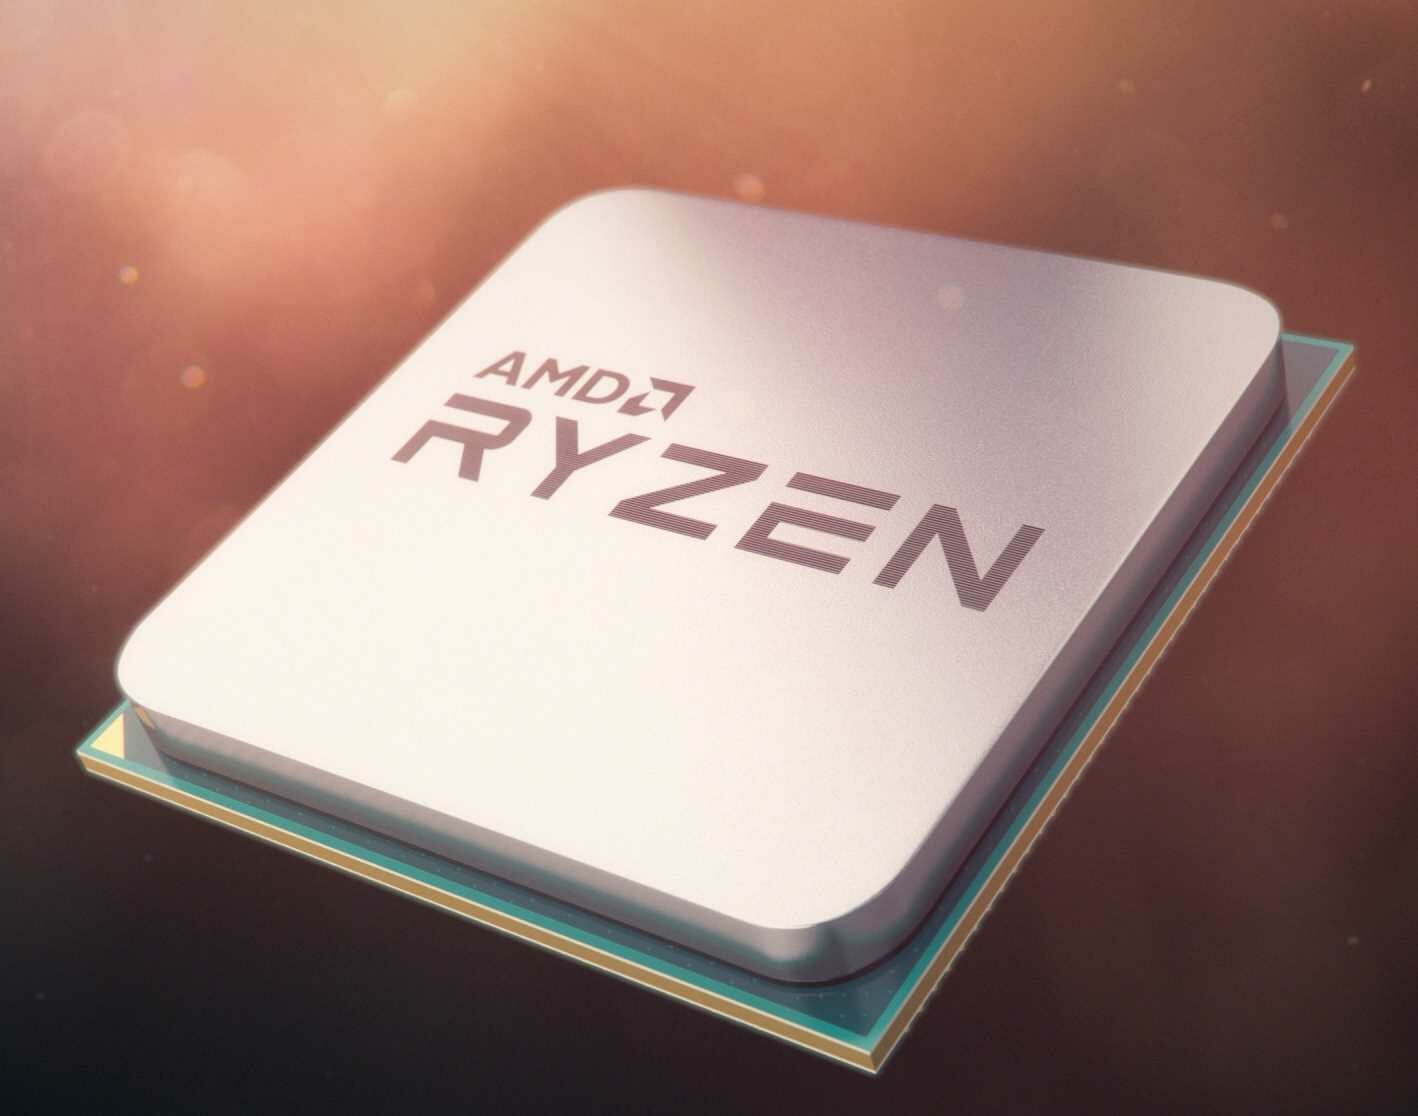 Procesor AMD Ryzen 3 - wydajność